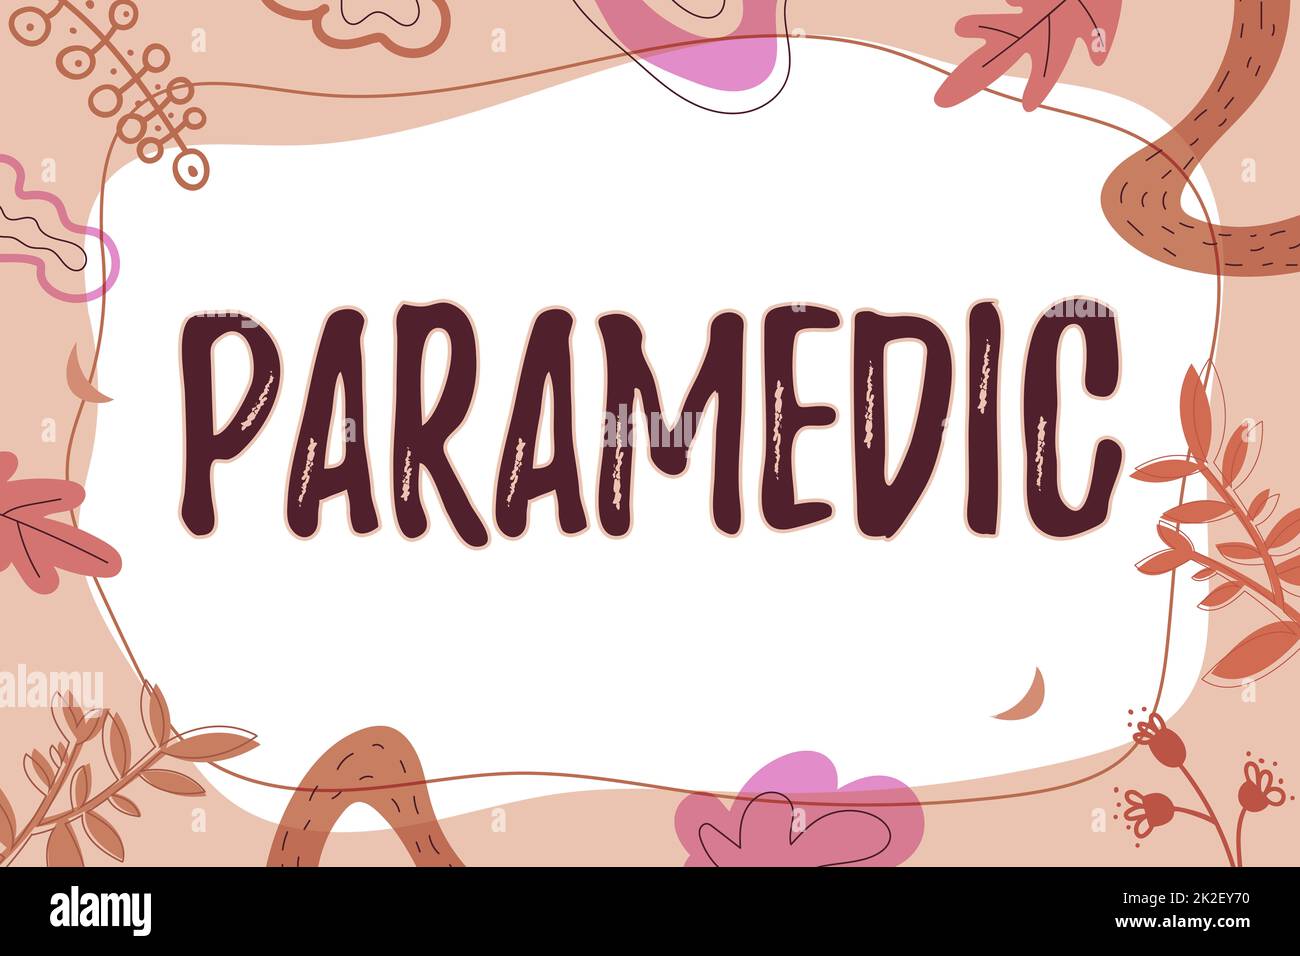 Inspiration montrant le signe Paramedic. Concept d'affaires un travailleur de la santé ayant une expertise en travail médical d'urgence cadre de texte entouré de fleurs assorties coeurs et feuilles. Banque D'Images